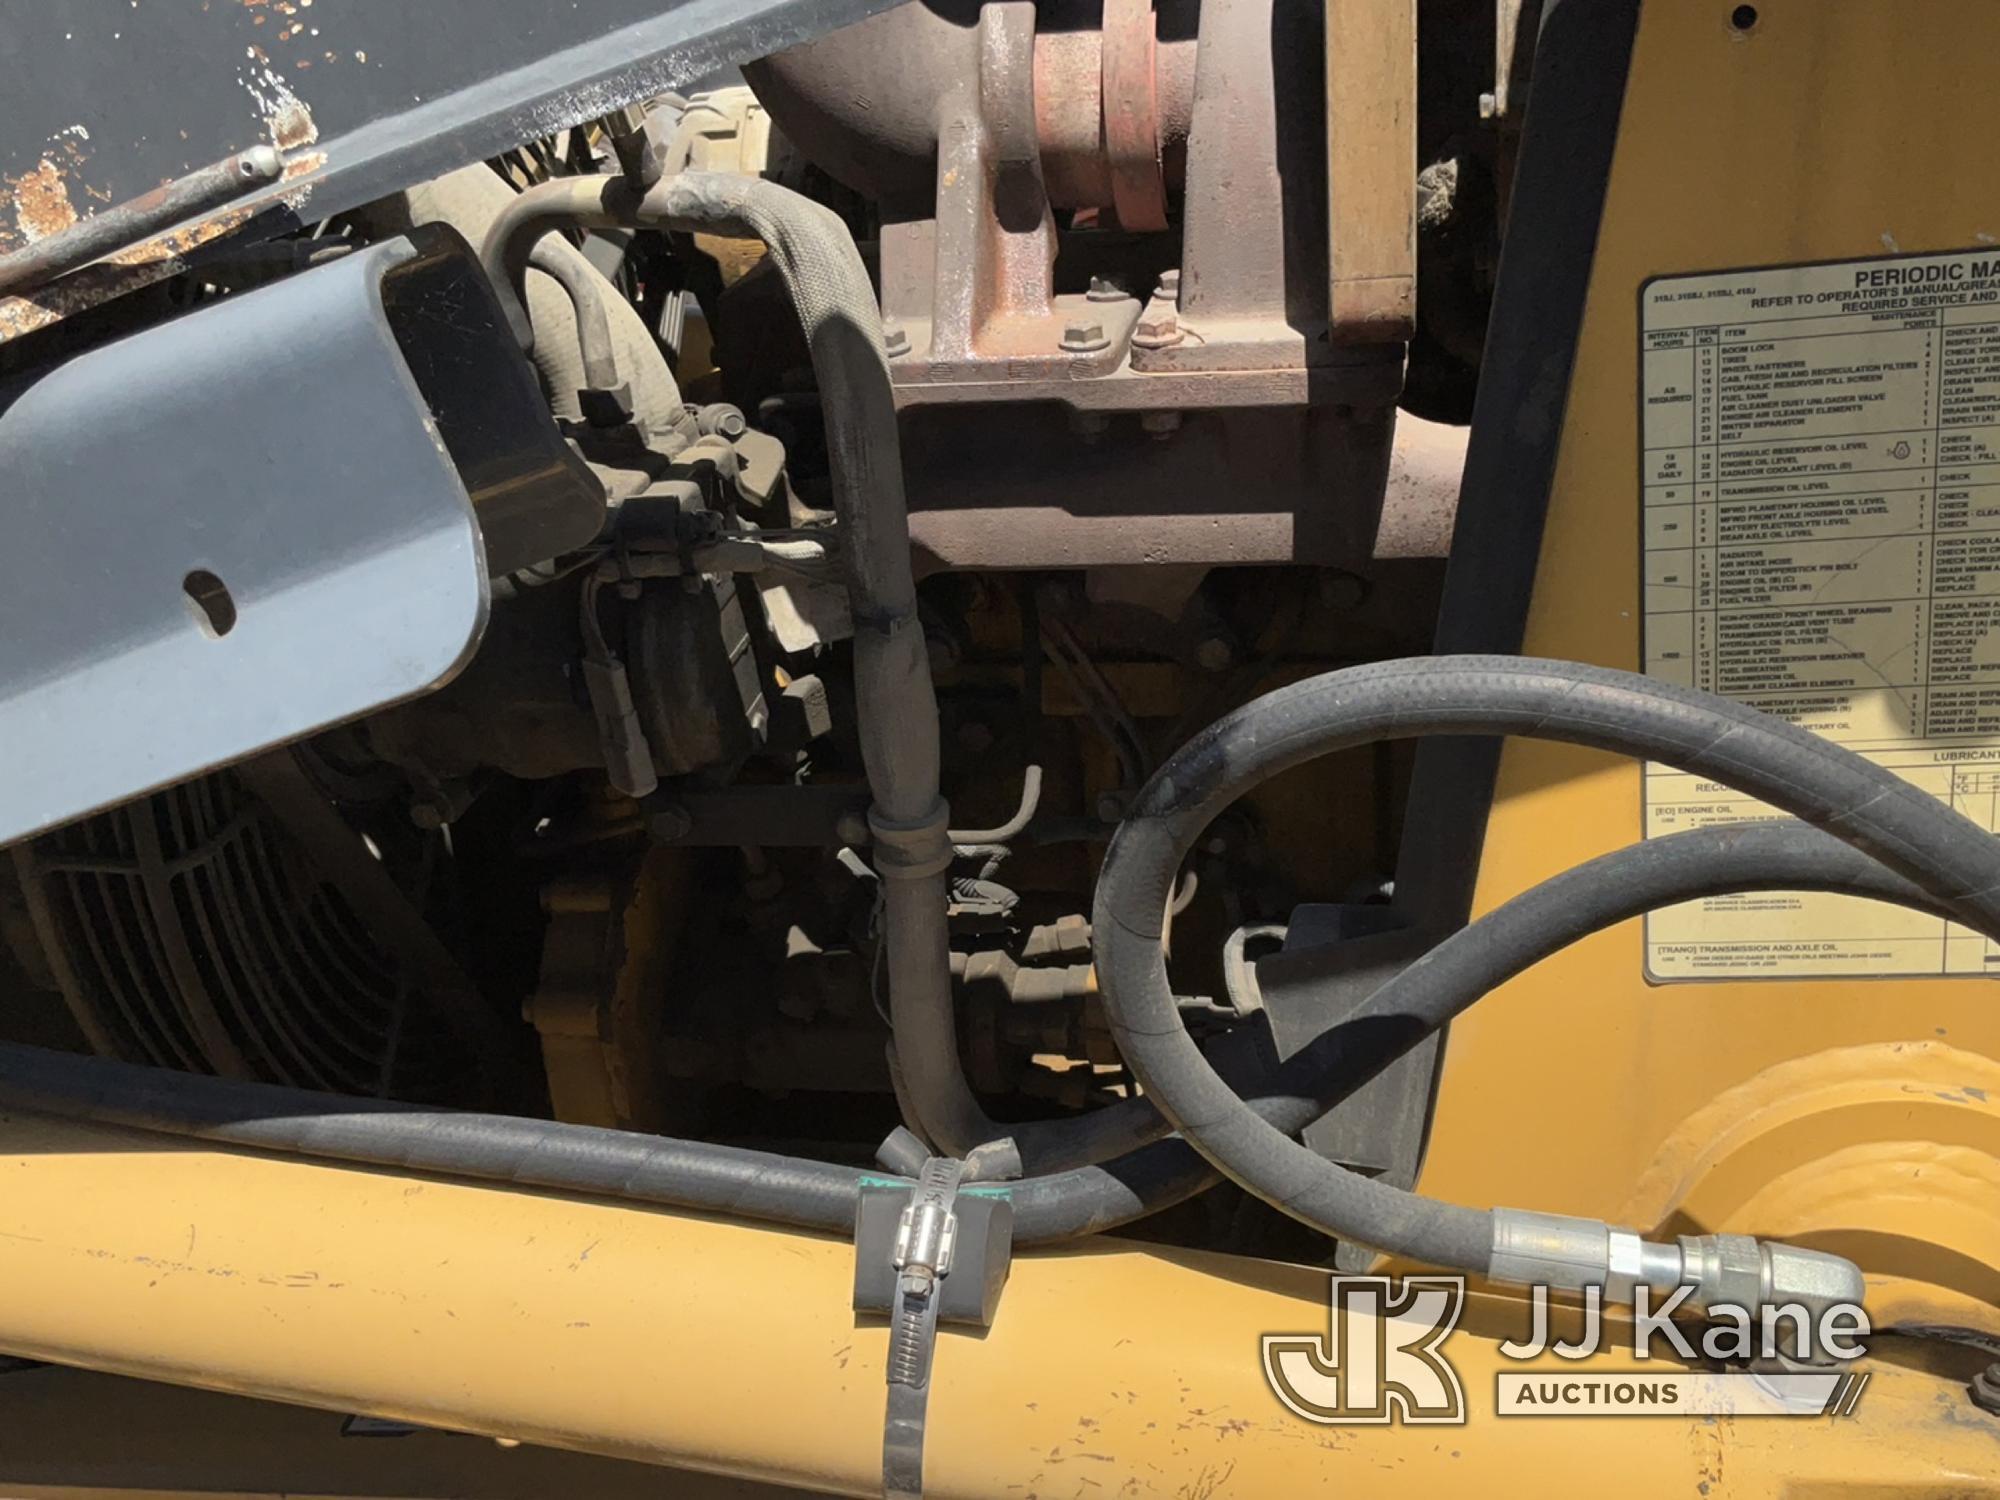 (Jurupa Valley, CA) 2007 John Deere 315SJ Tractor Loader Backhoe Runs & Moves, Front Tires Flat